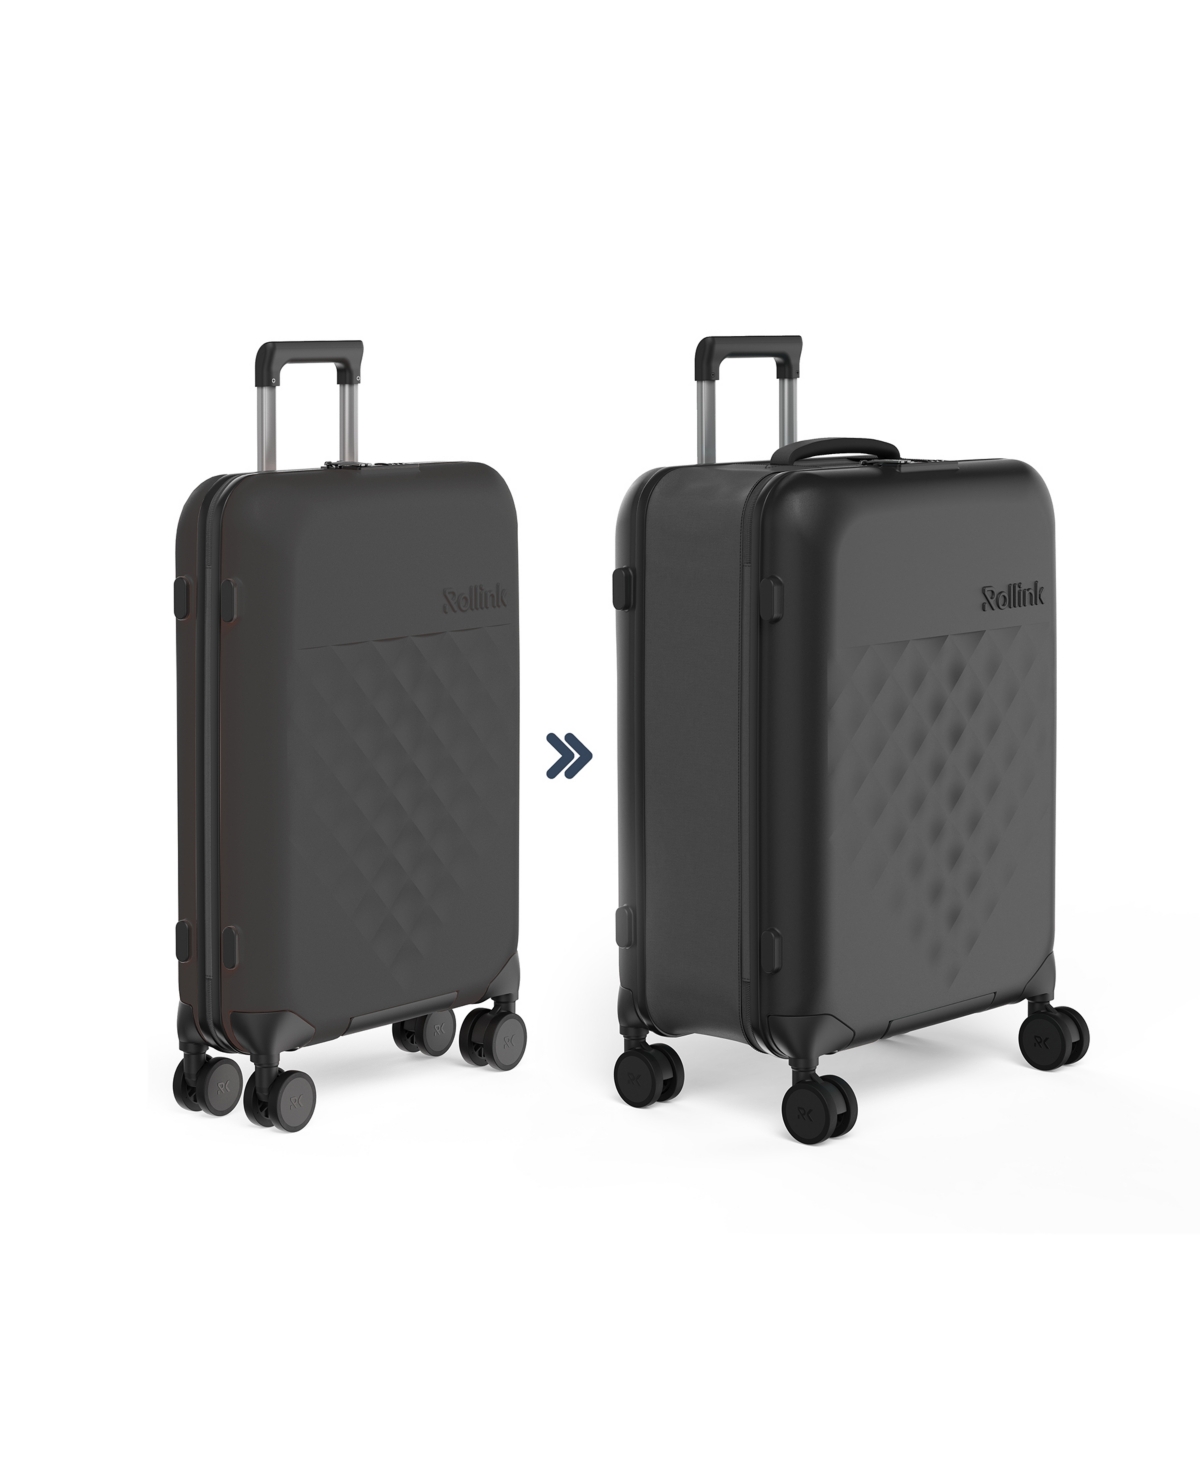 Rollink Flex 360 Spinner 26" Medium Check-in Suitcase In Black